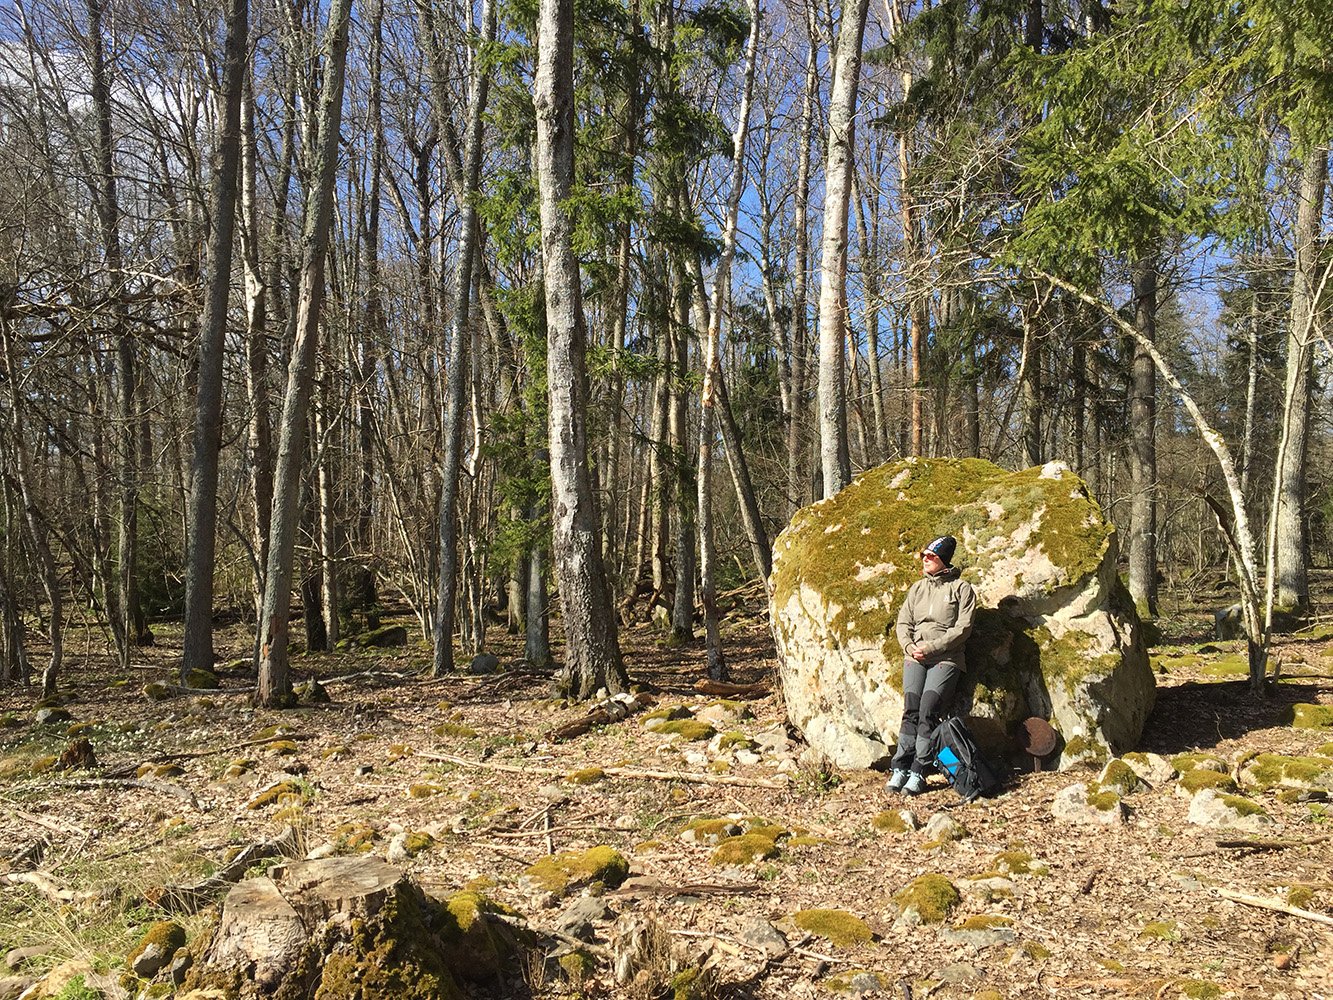 Kvinna lutar sig mot sten som är större än henne. På marken bredvid står en ryggsäck. Lövskog i bakgrunden.